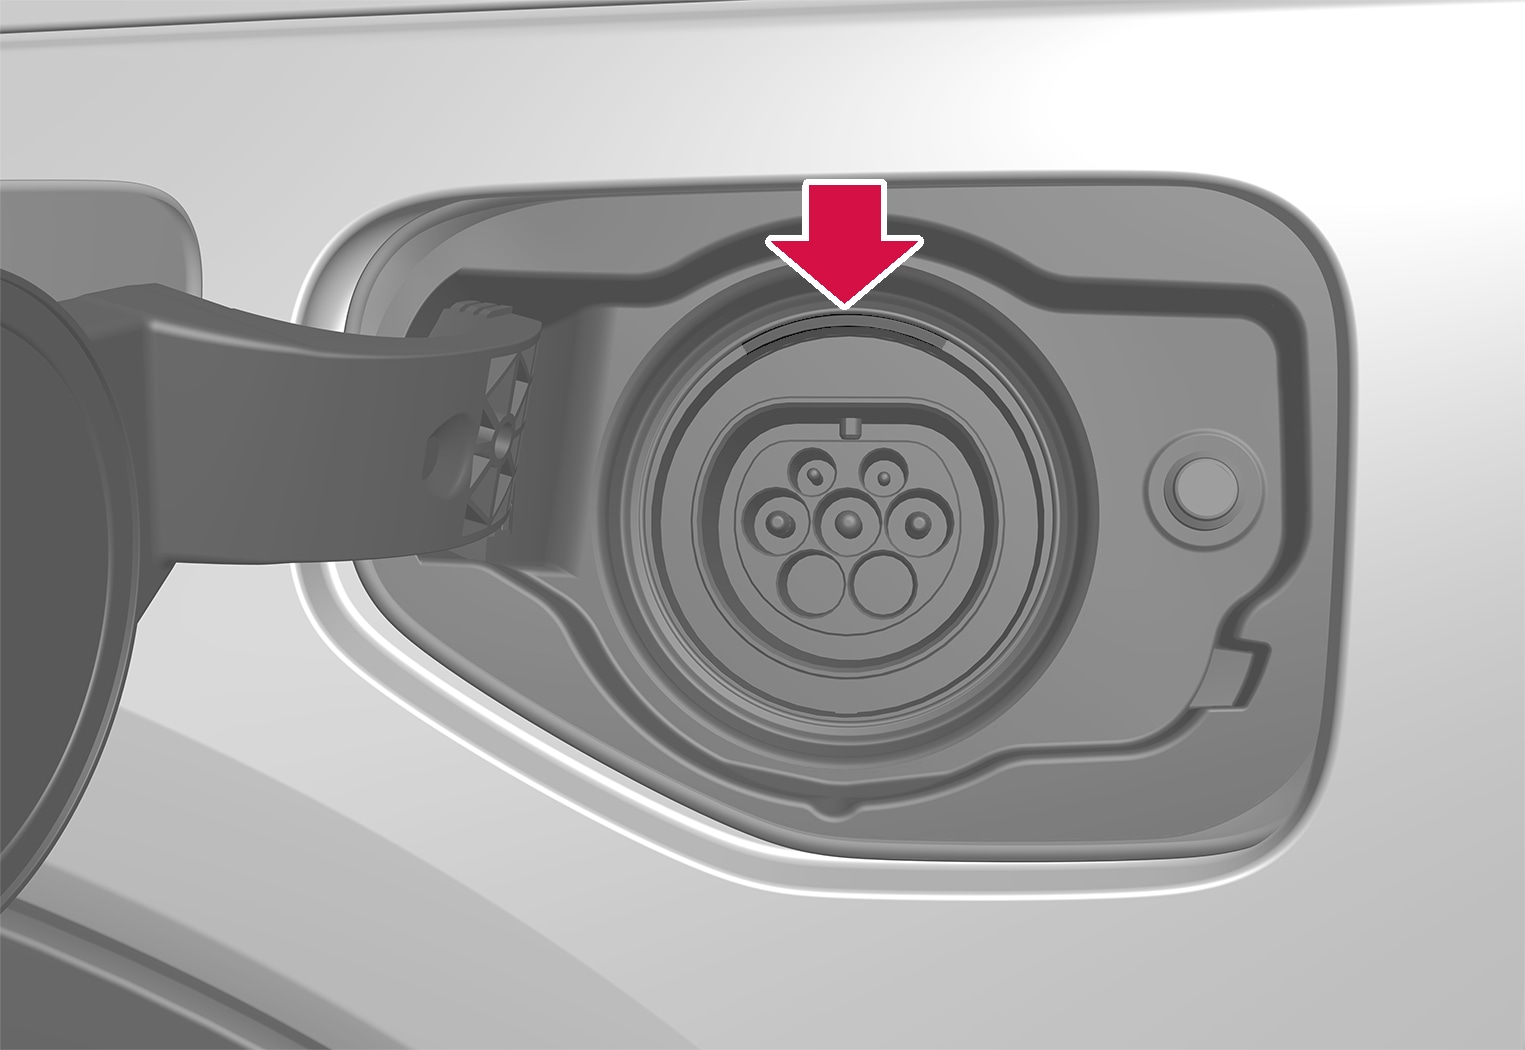 P5-18w46-XC40H LED indicators for charging